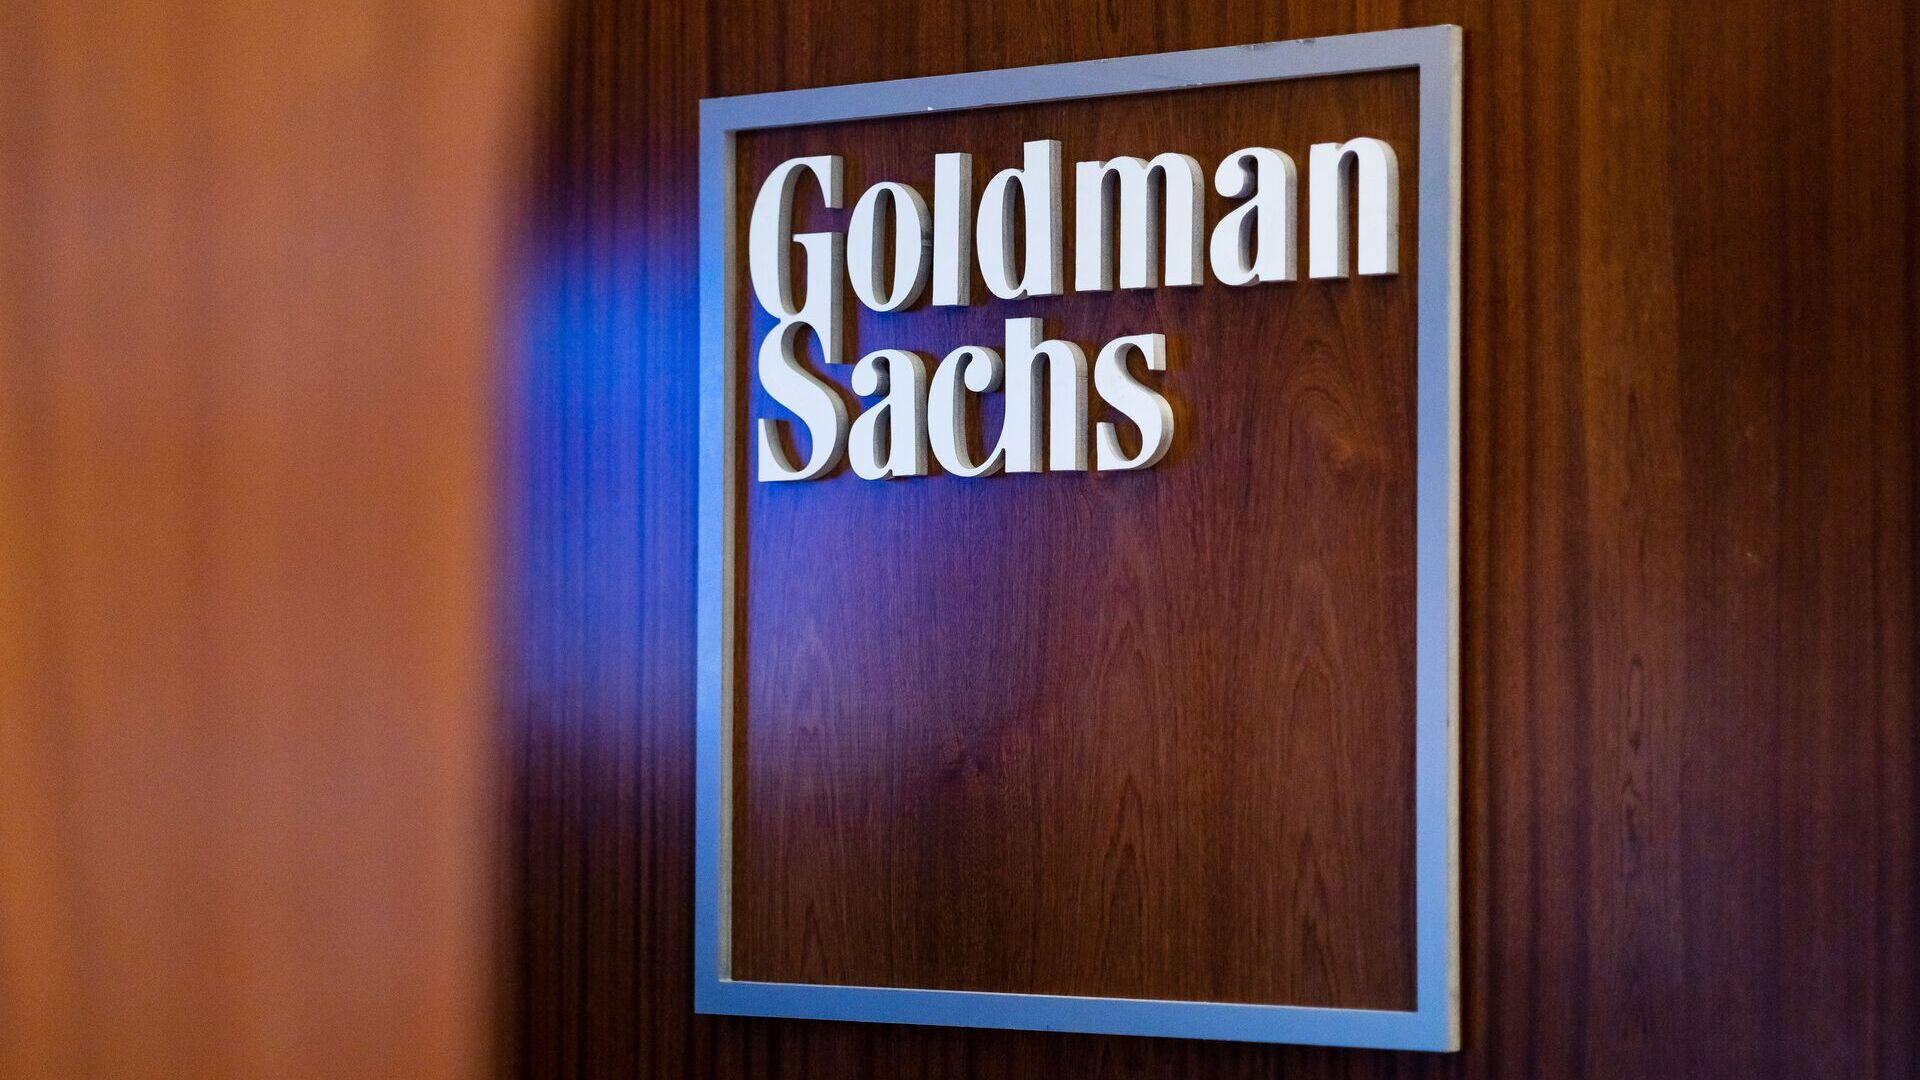 Bakan Şimşek, Goldman Sachs'ta yatırımcılarla görüşecek HABERLER, Ekonomi Haberleri, Gündemdekiler, Piyasa Haberleri Rota Borsa